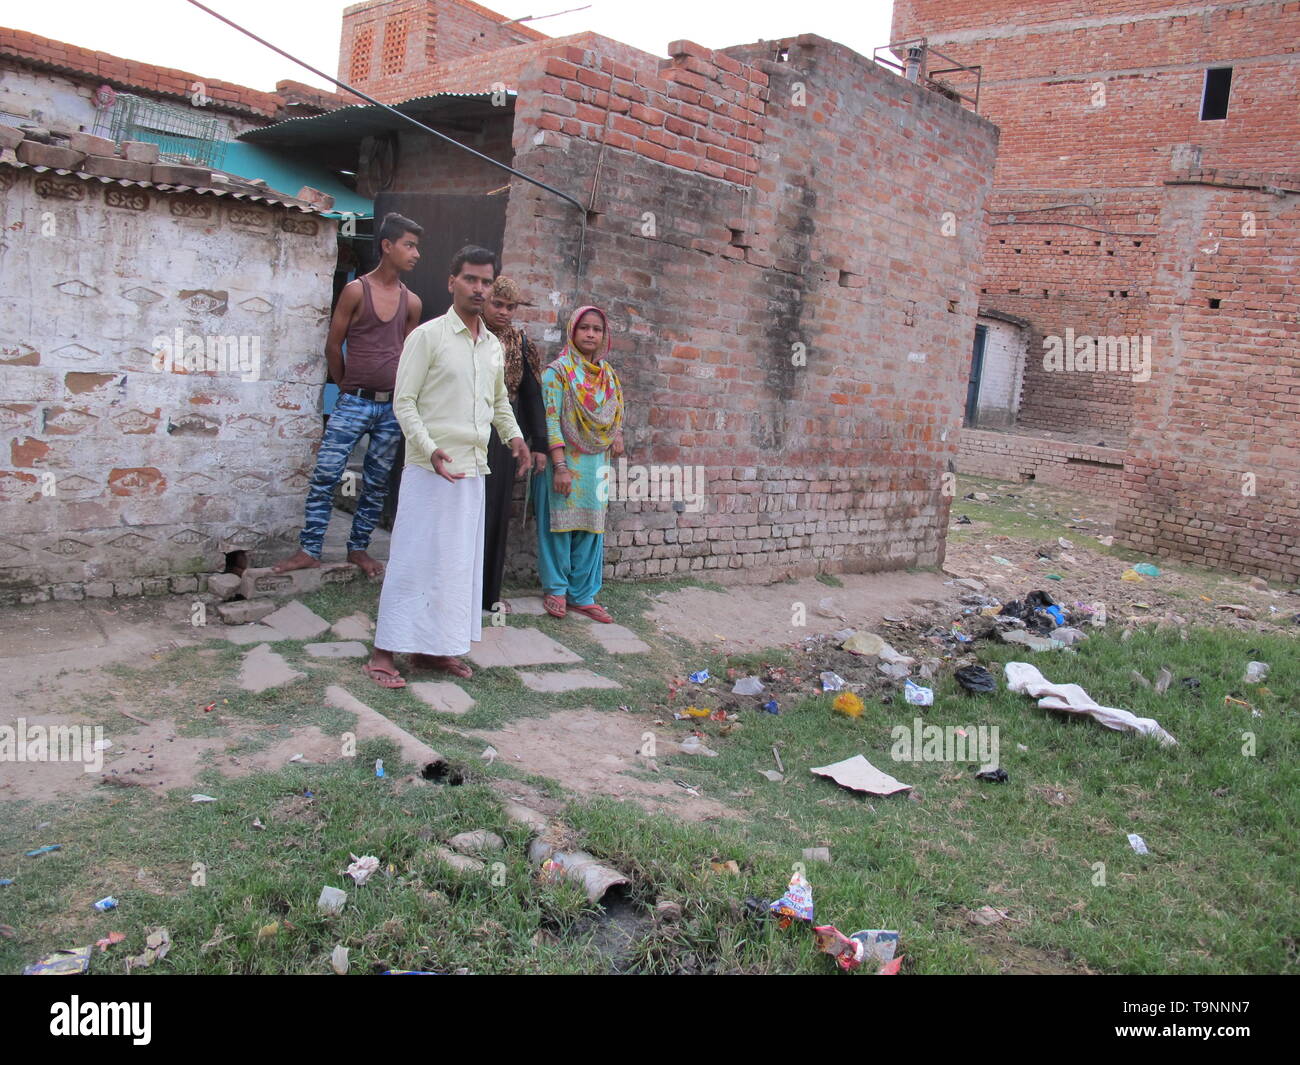 Varanasi, India. 26 abr, 2019. Rizwan Ali, un local de la Saraiya, Varanasi, muestra el mal saneamiento fuera de su casa. Los residentes de barrios dominado por musulmanes afirman haber sido abandonados por las autoridades y sufren la falta de desarrollo y servicios públicos incluyendo los suministros de agua potable, alcantarillado y saneamiento disfuncional. Crédito: Siddhartha Kumar/dpa/Alamy Live News Foto de stock